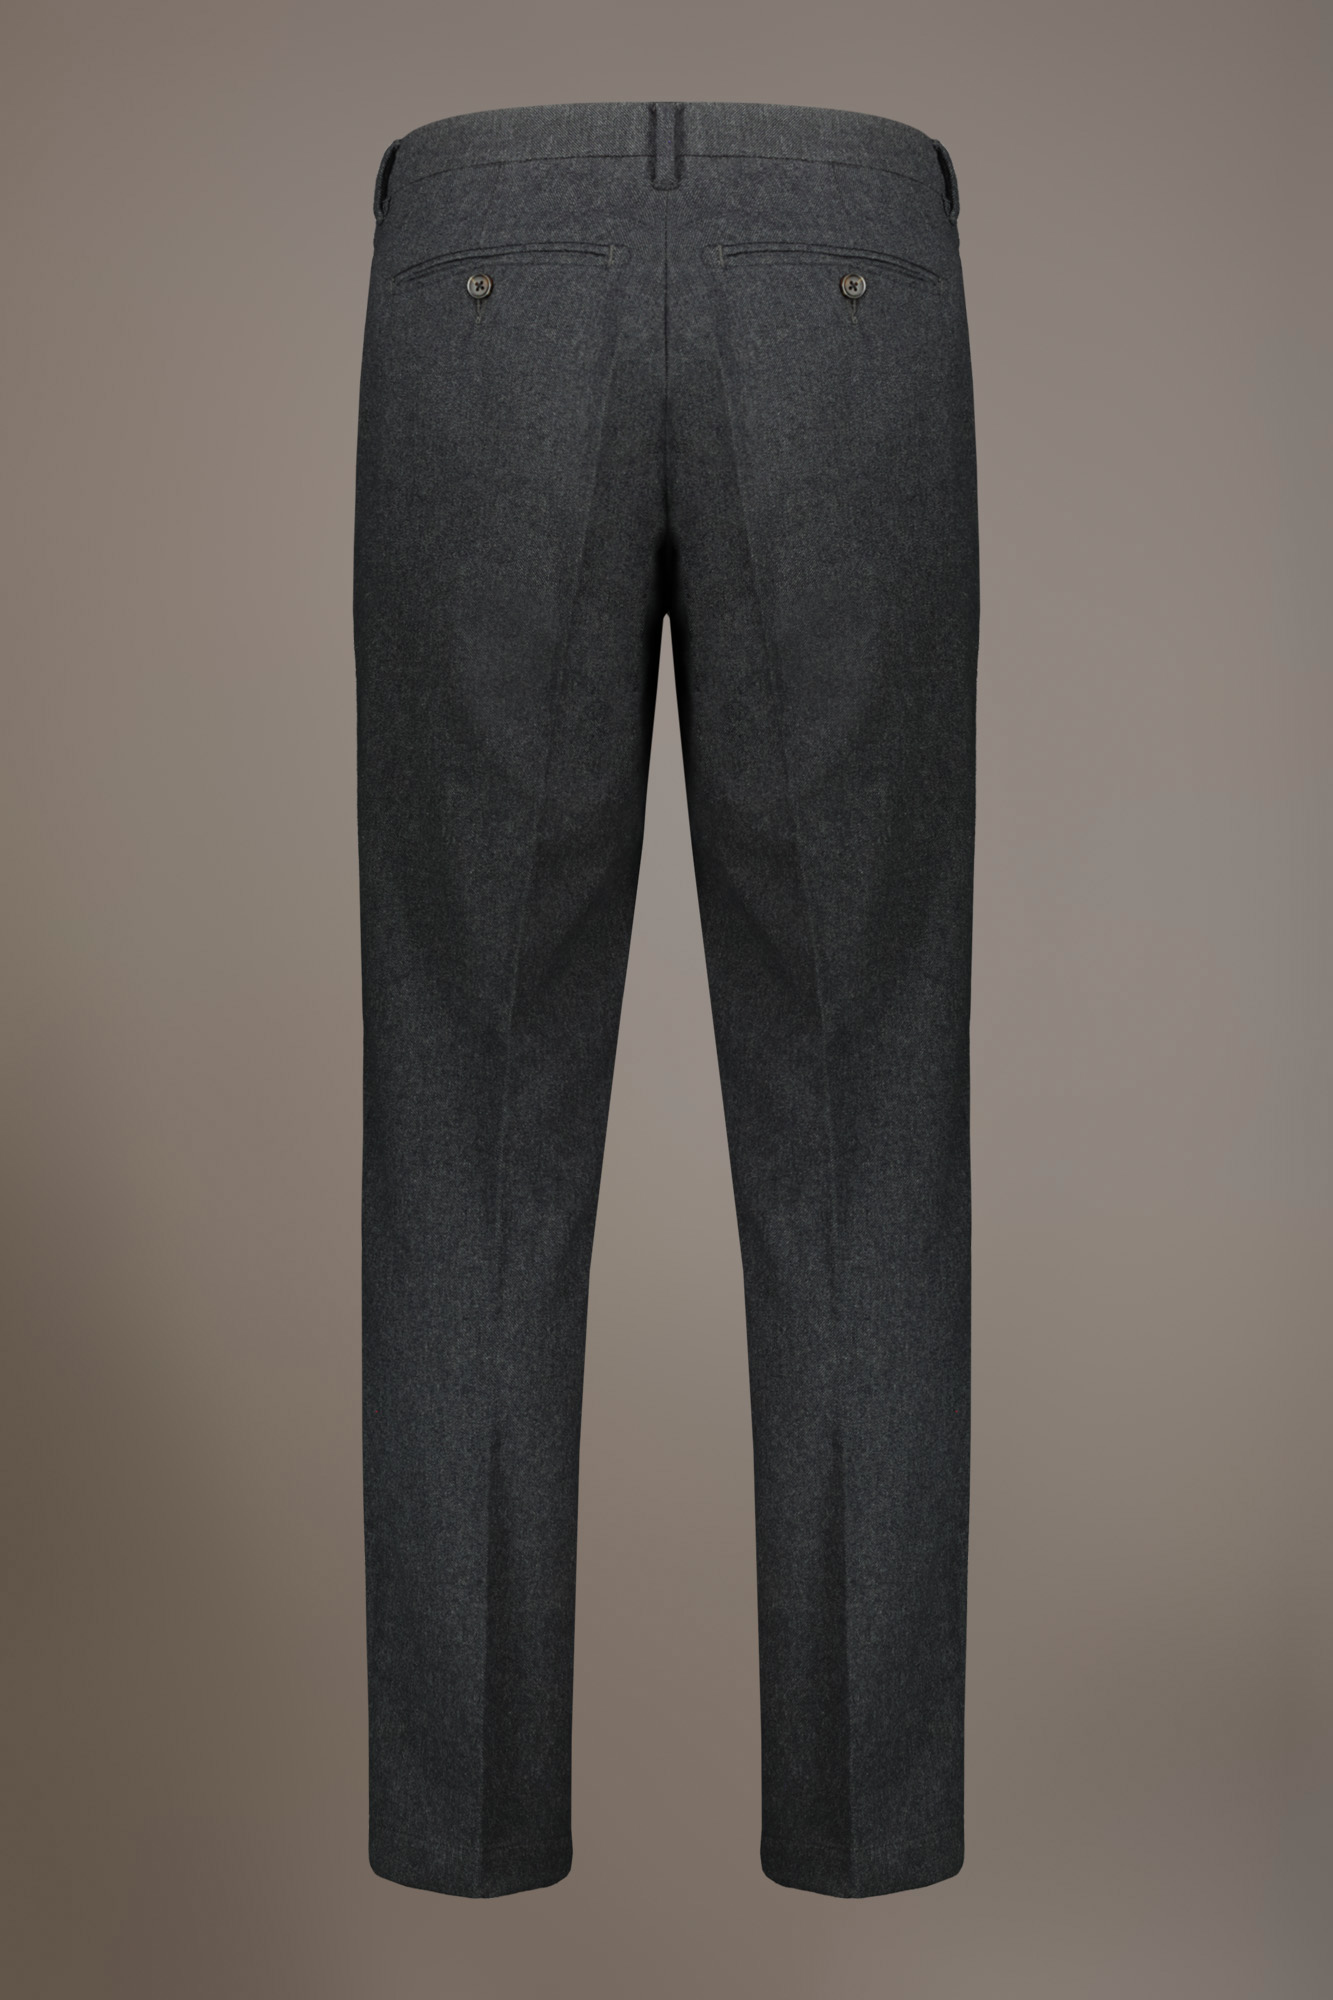 Pantalone chino regular fit tessuto tinto filo melange twill image number 6